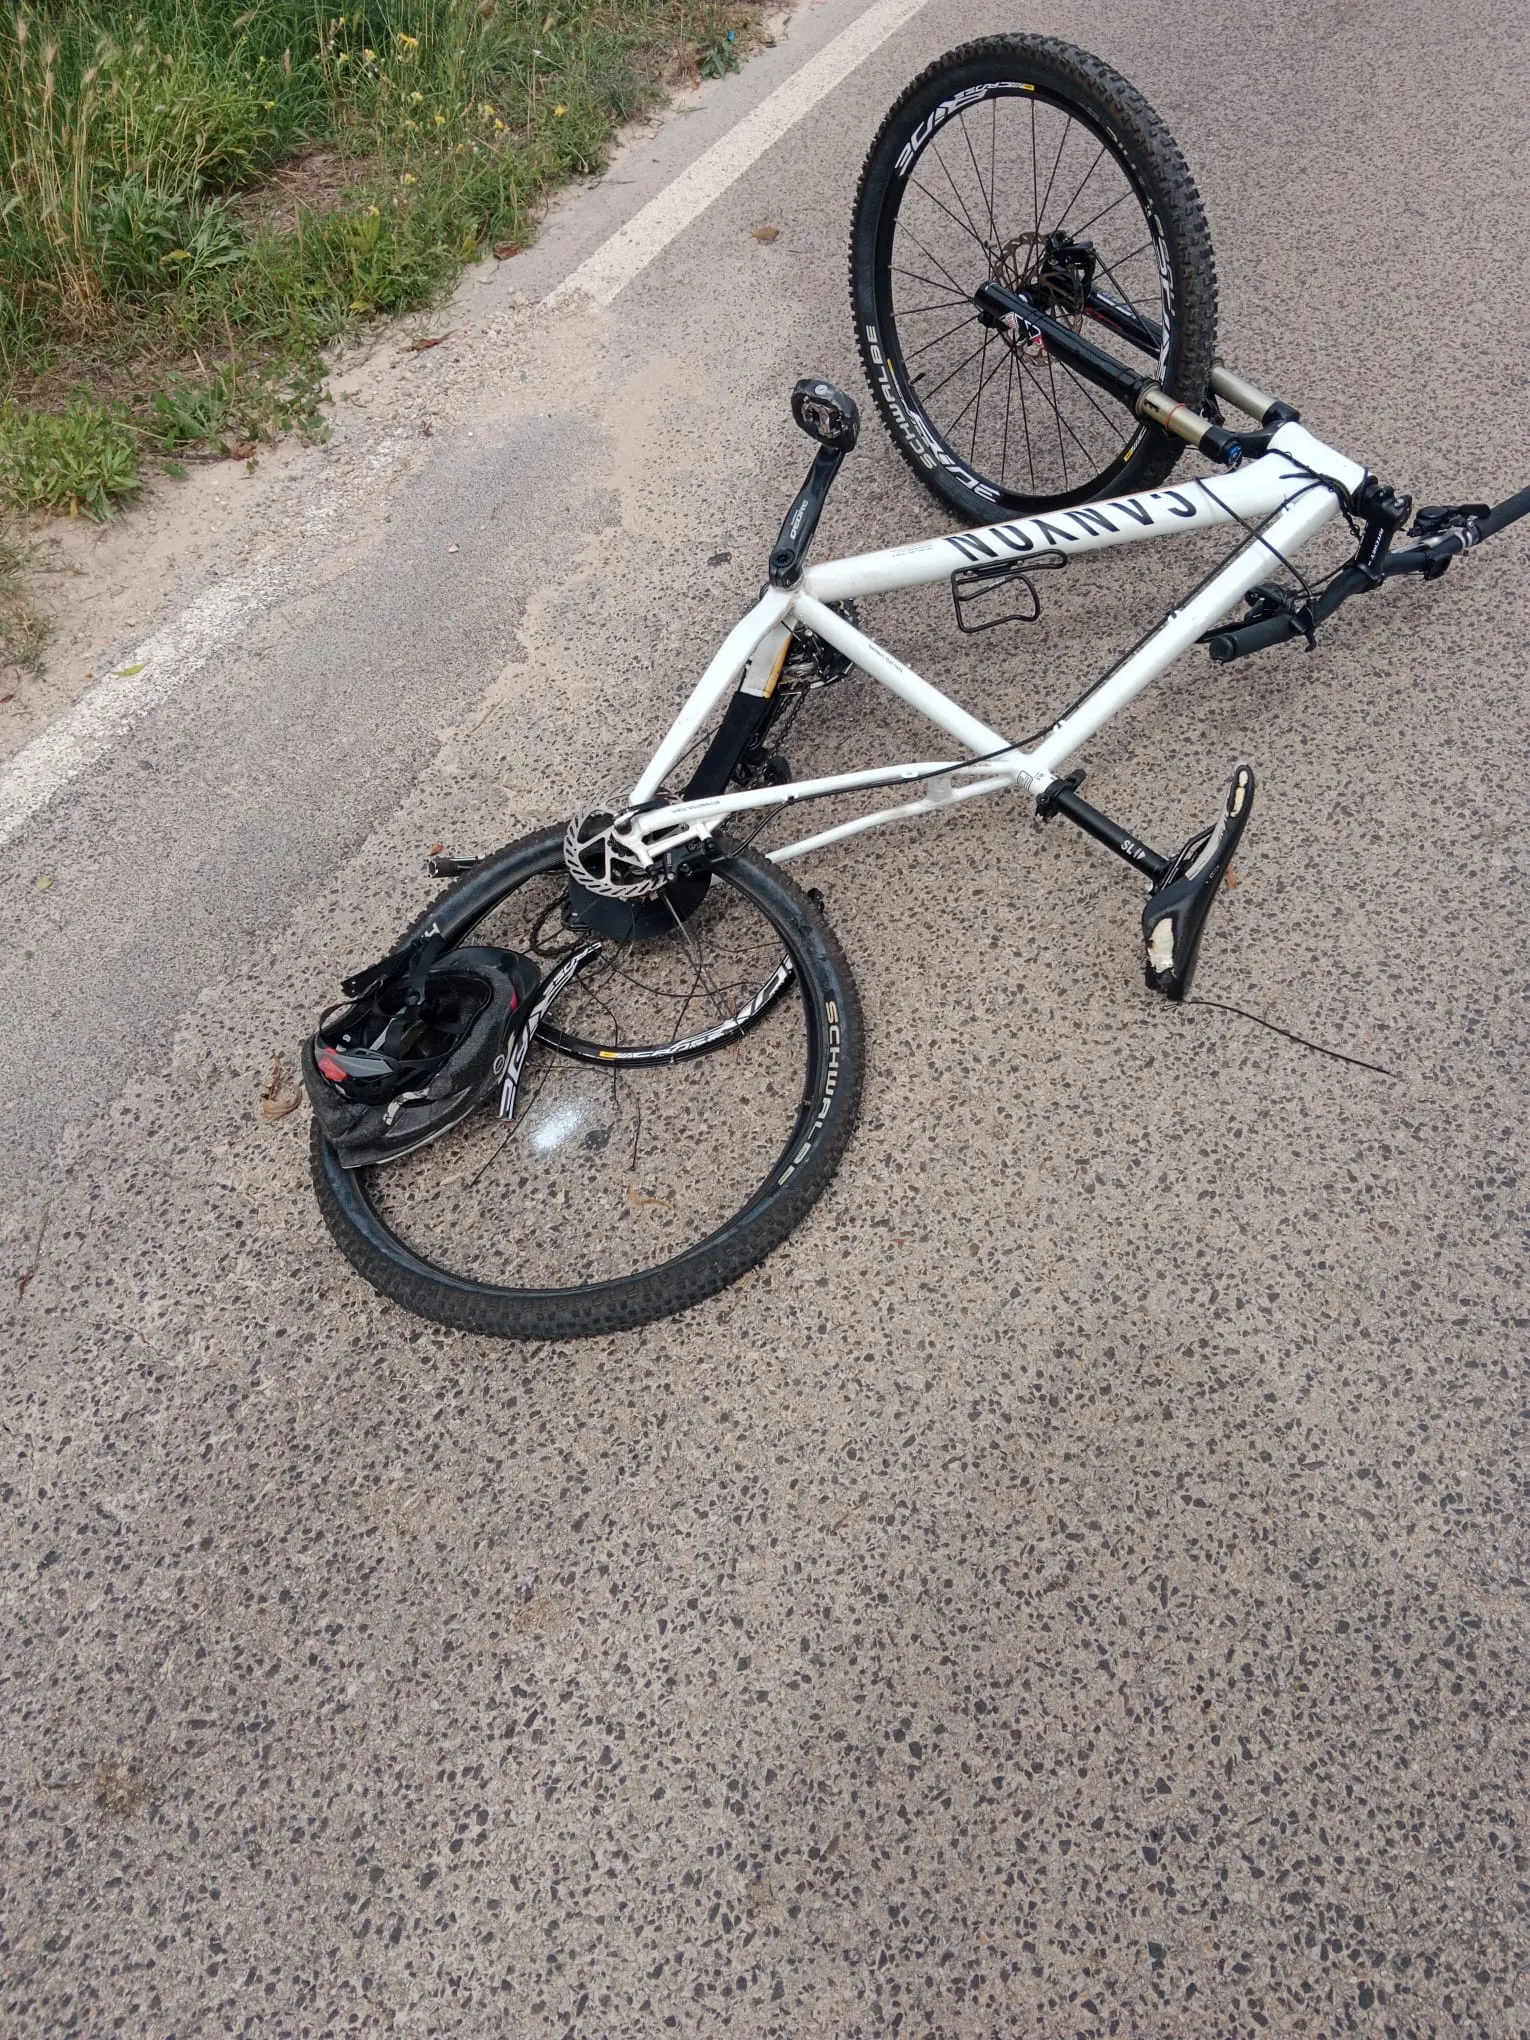 La bicicletta dopo l'impatto (Foto: Pala)